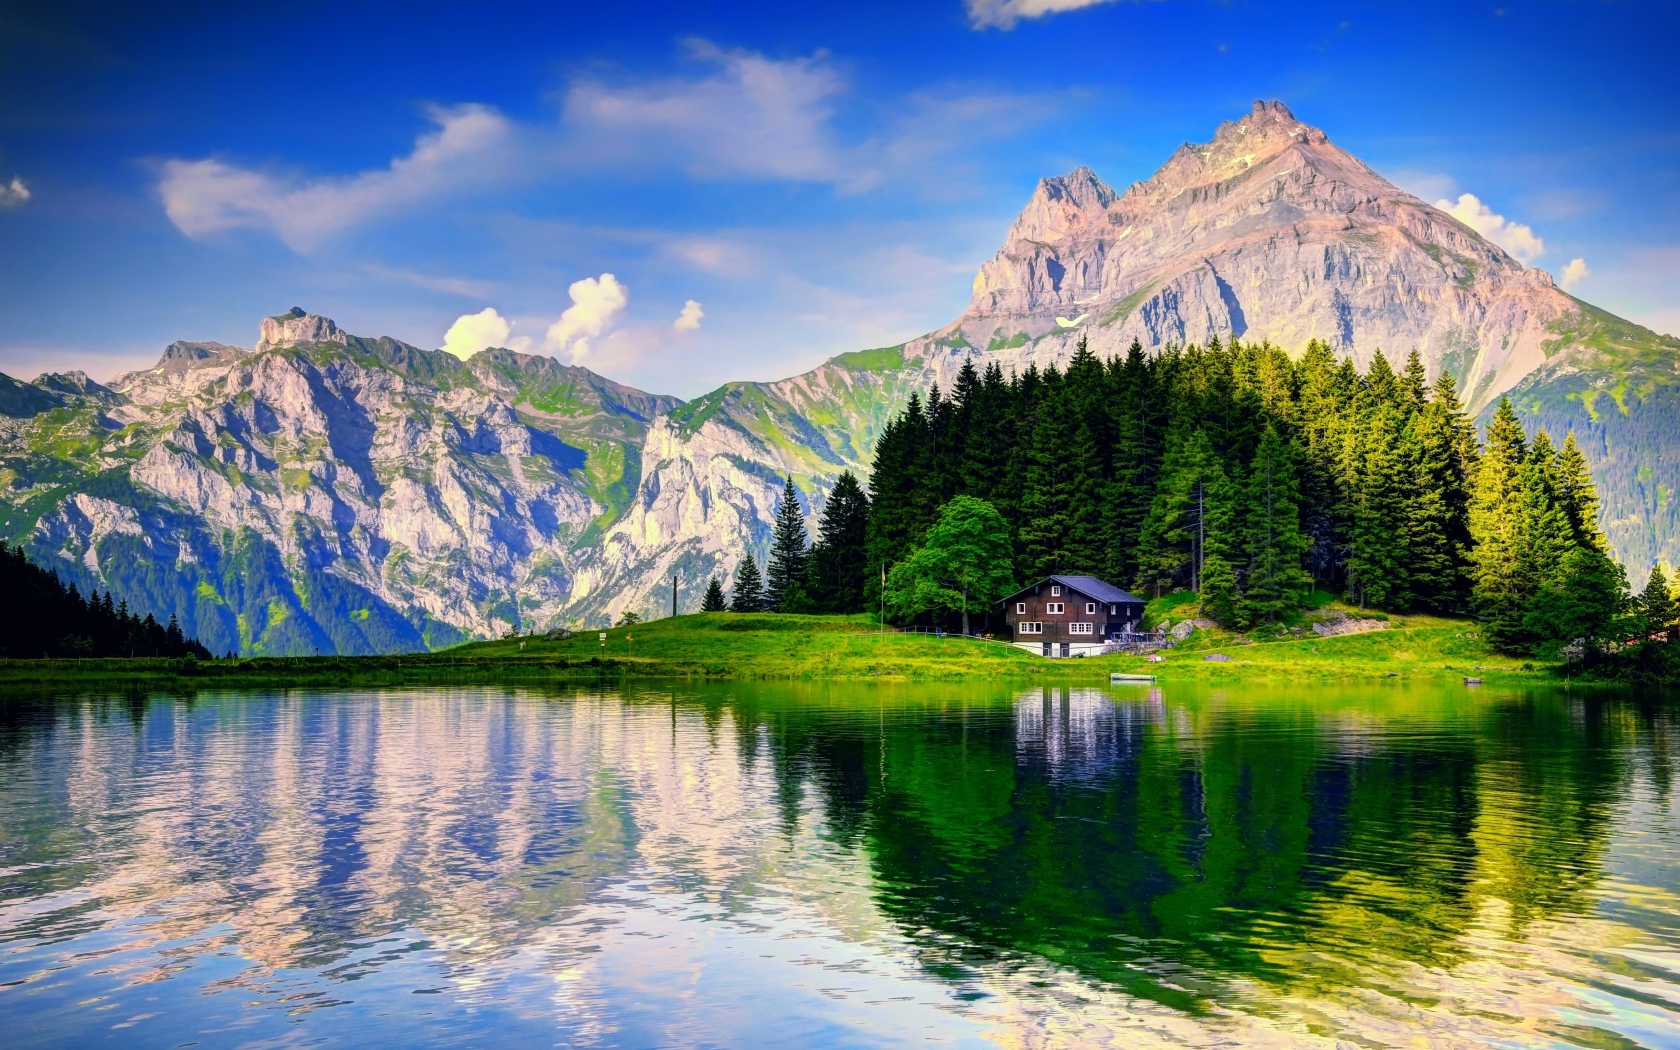 Лес и горы отражаются в озере под красивым голубым небом с белыми облаками